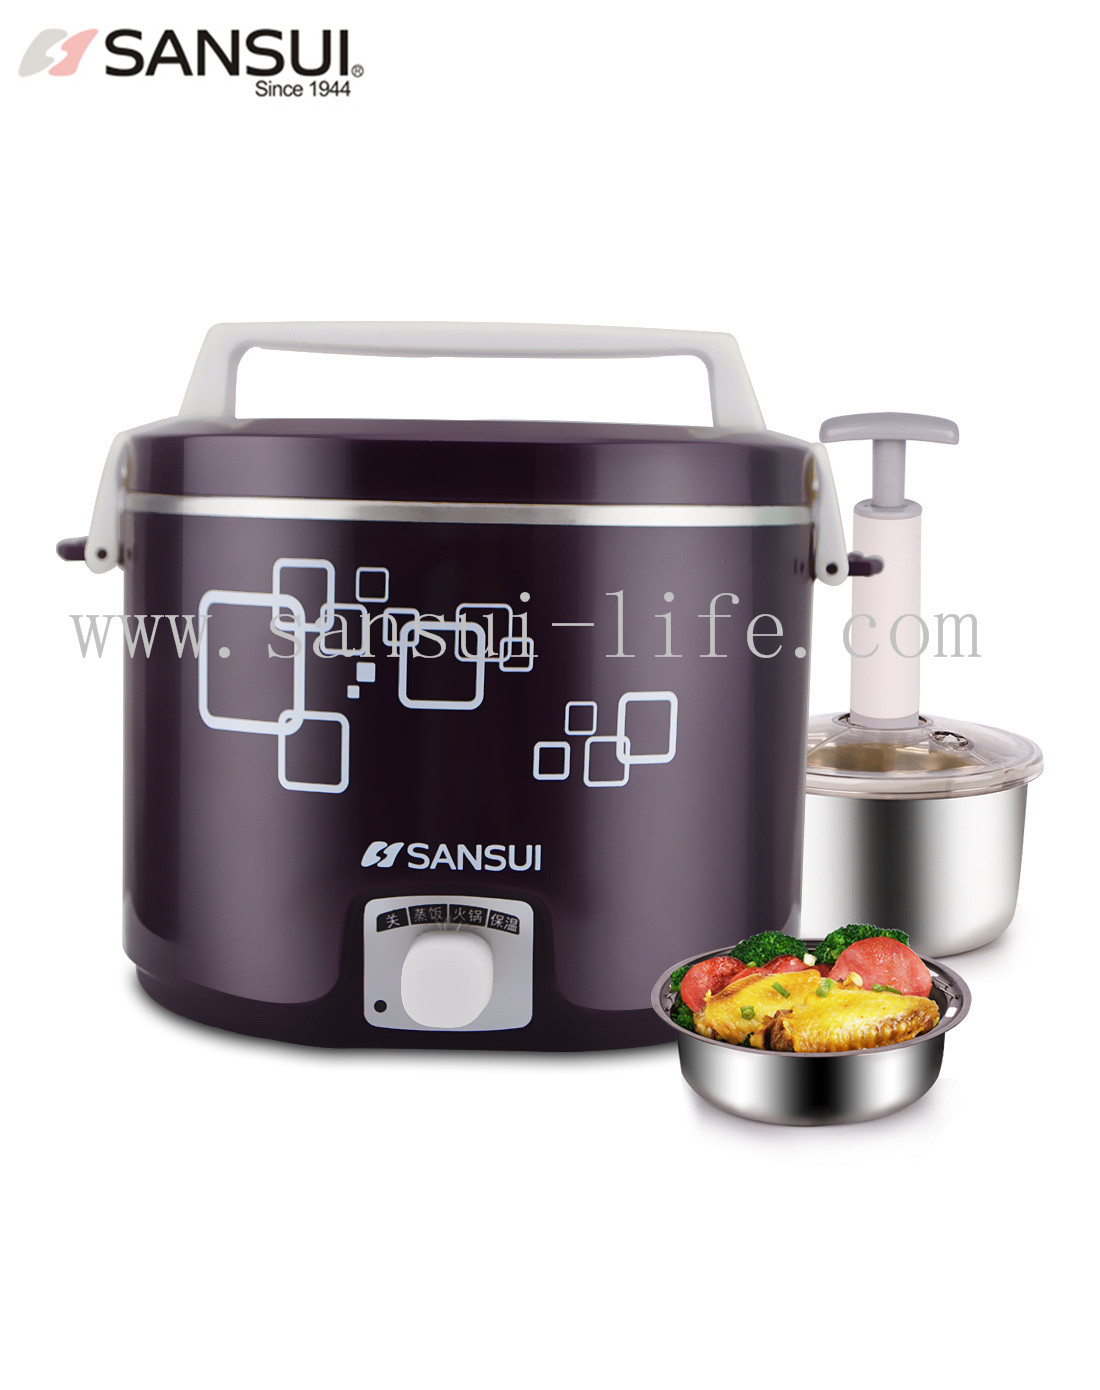 SANSUI Vacuum preservation, multi-function cooking food warmer, 304 stainless steel Vacuum cooker